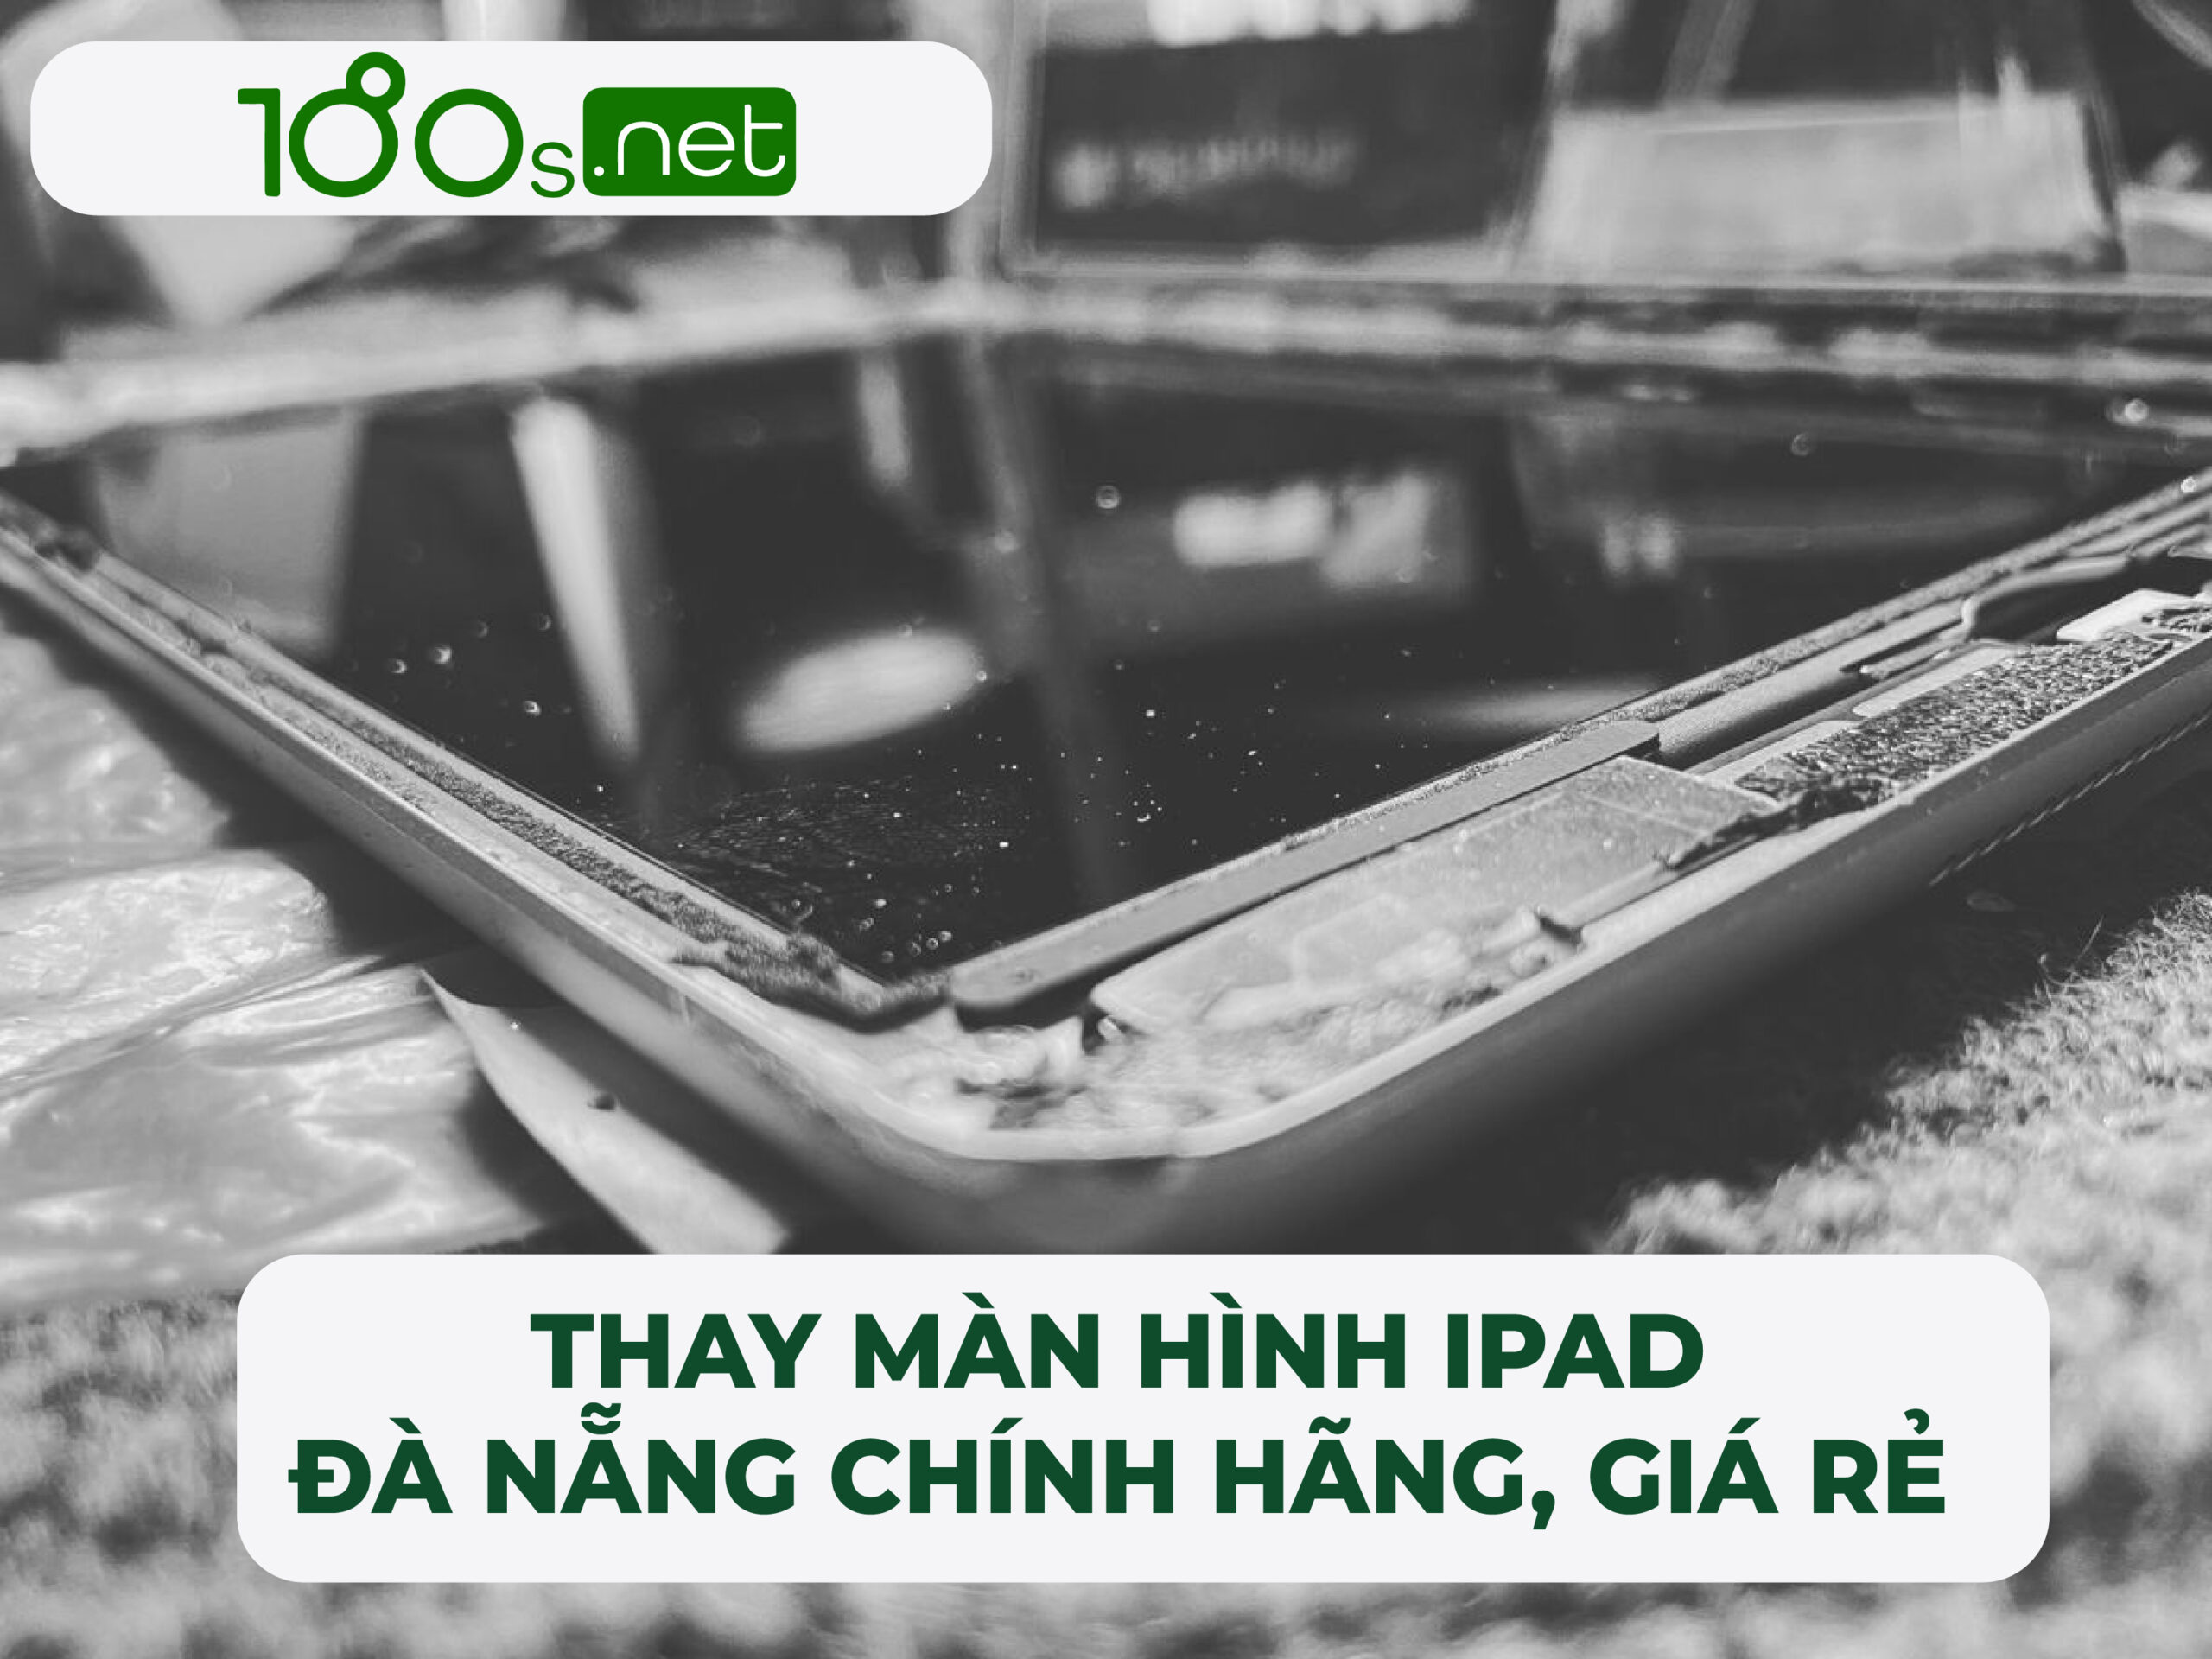 Thay màn hình iPad Đà Nẵng chính hãng, giá rẻ